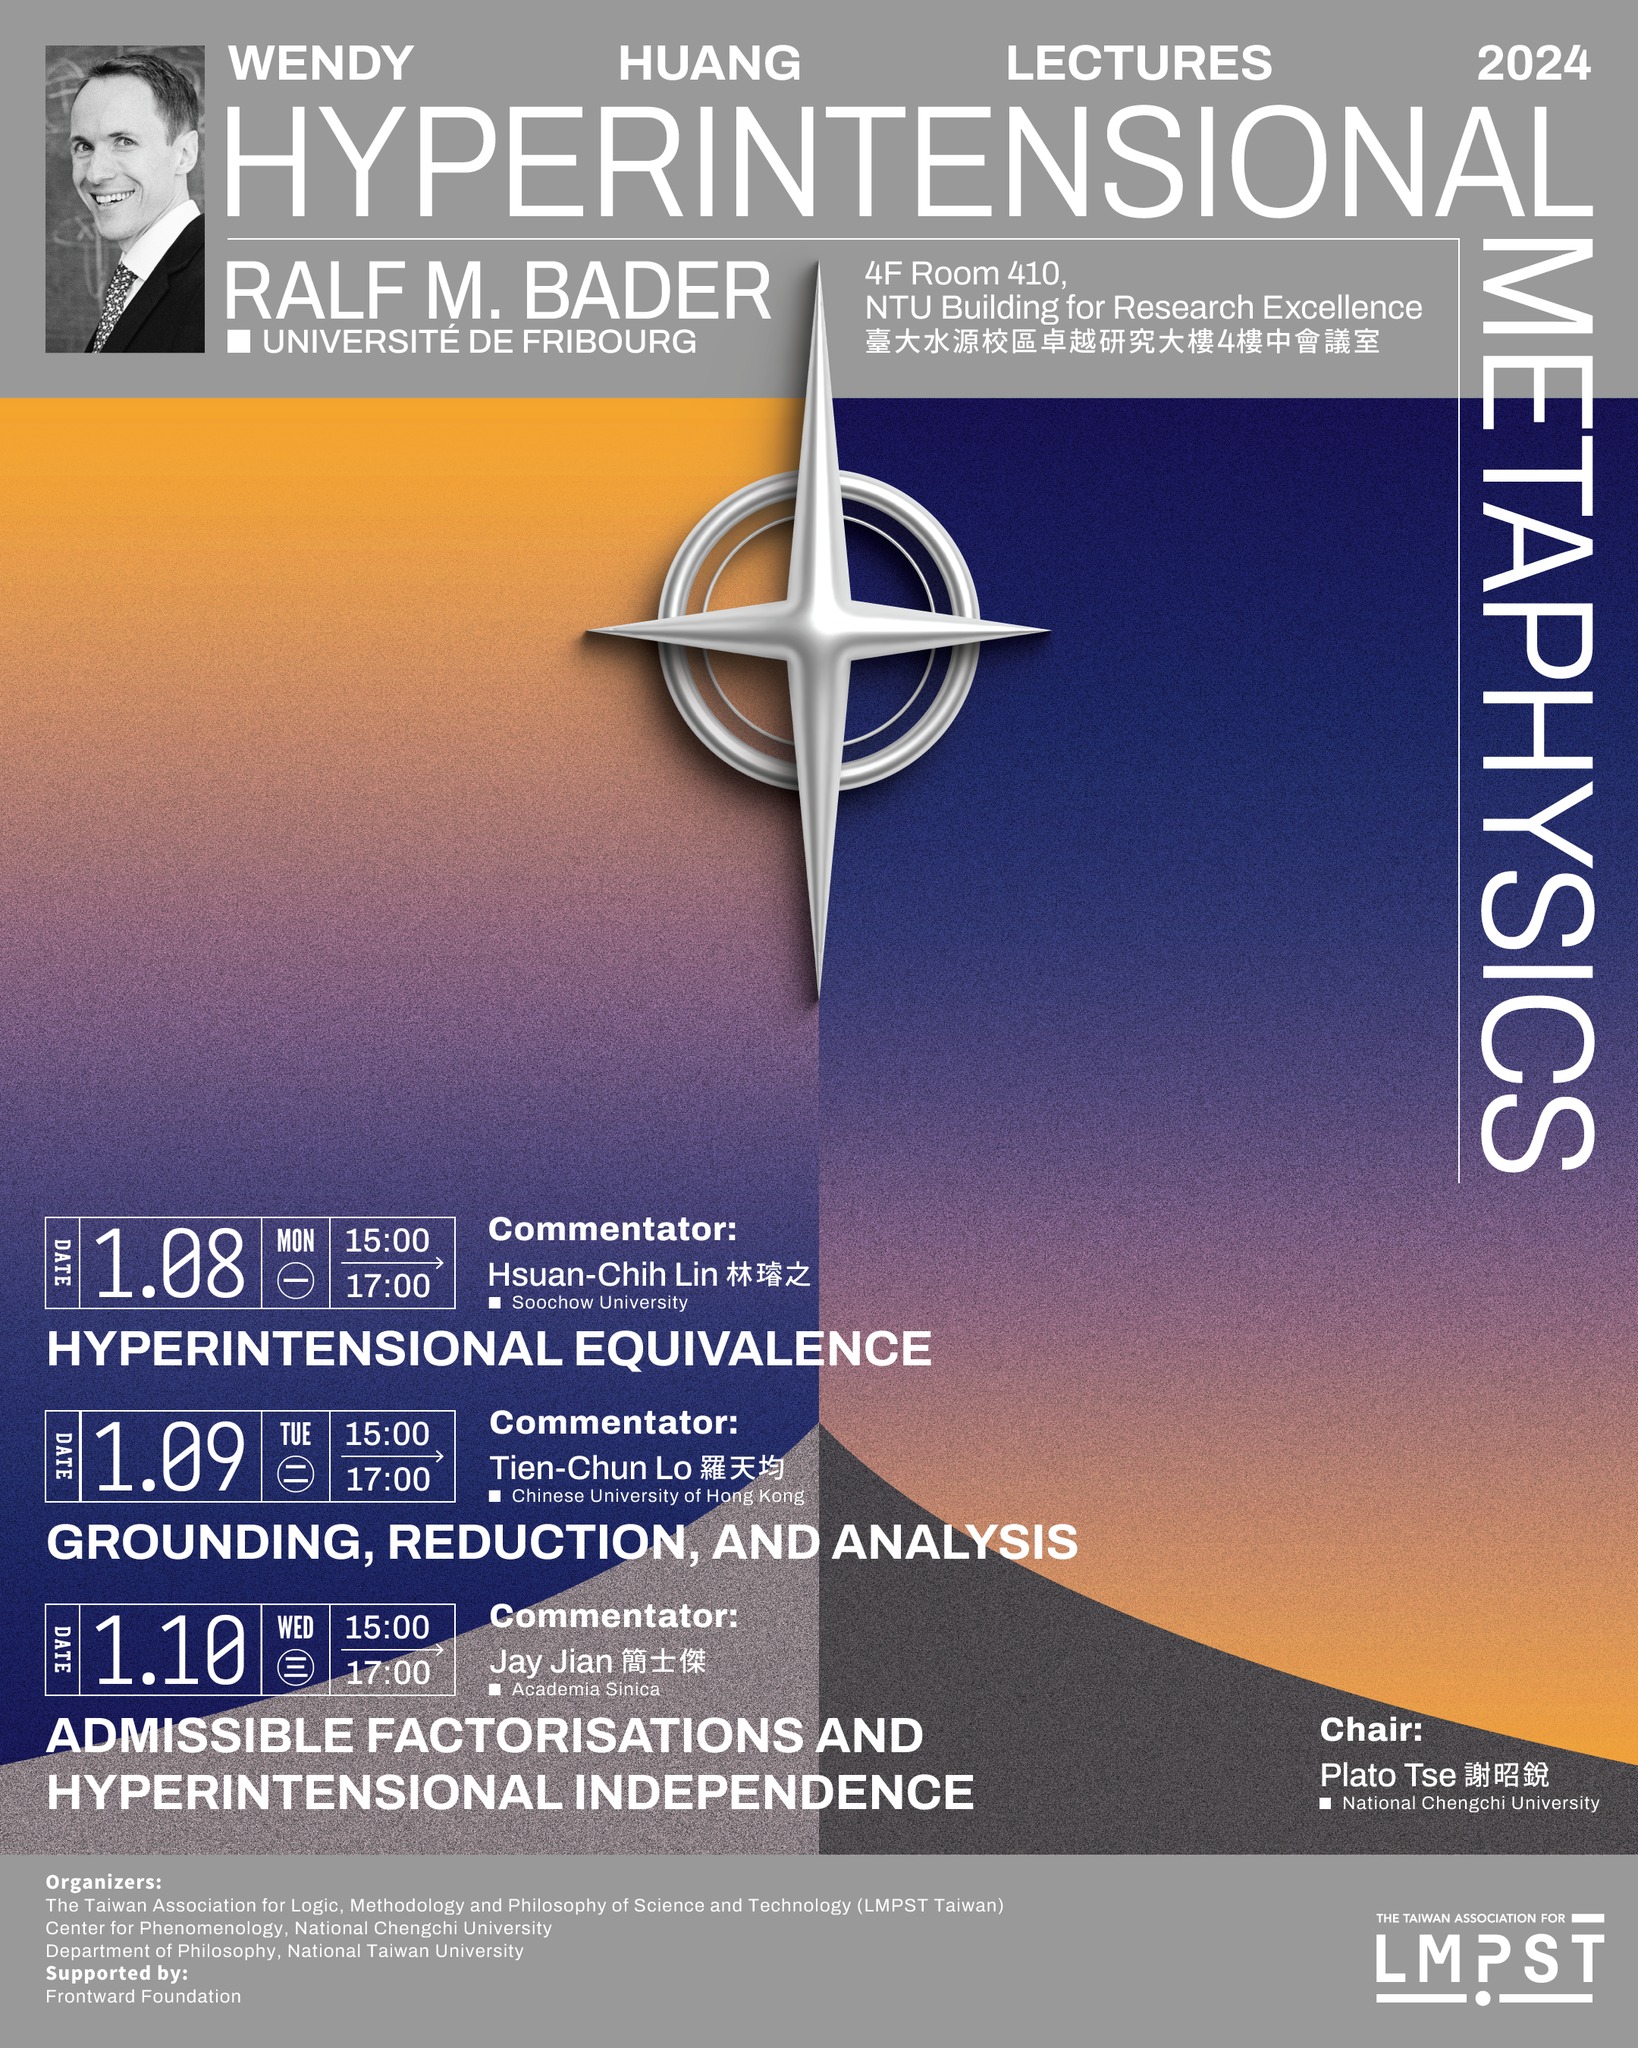 Wendy Huang Lectures 2024: Ralf M. Bader